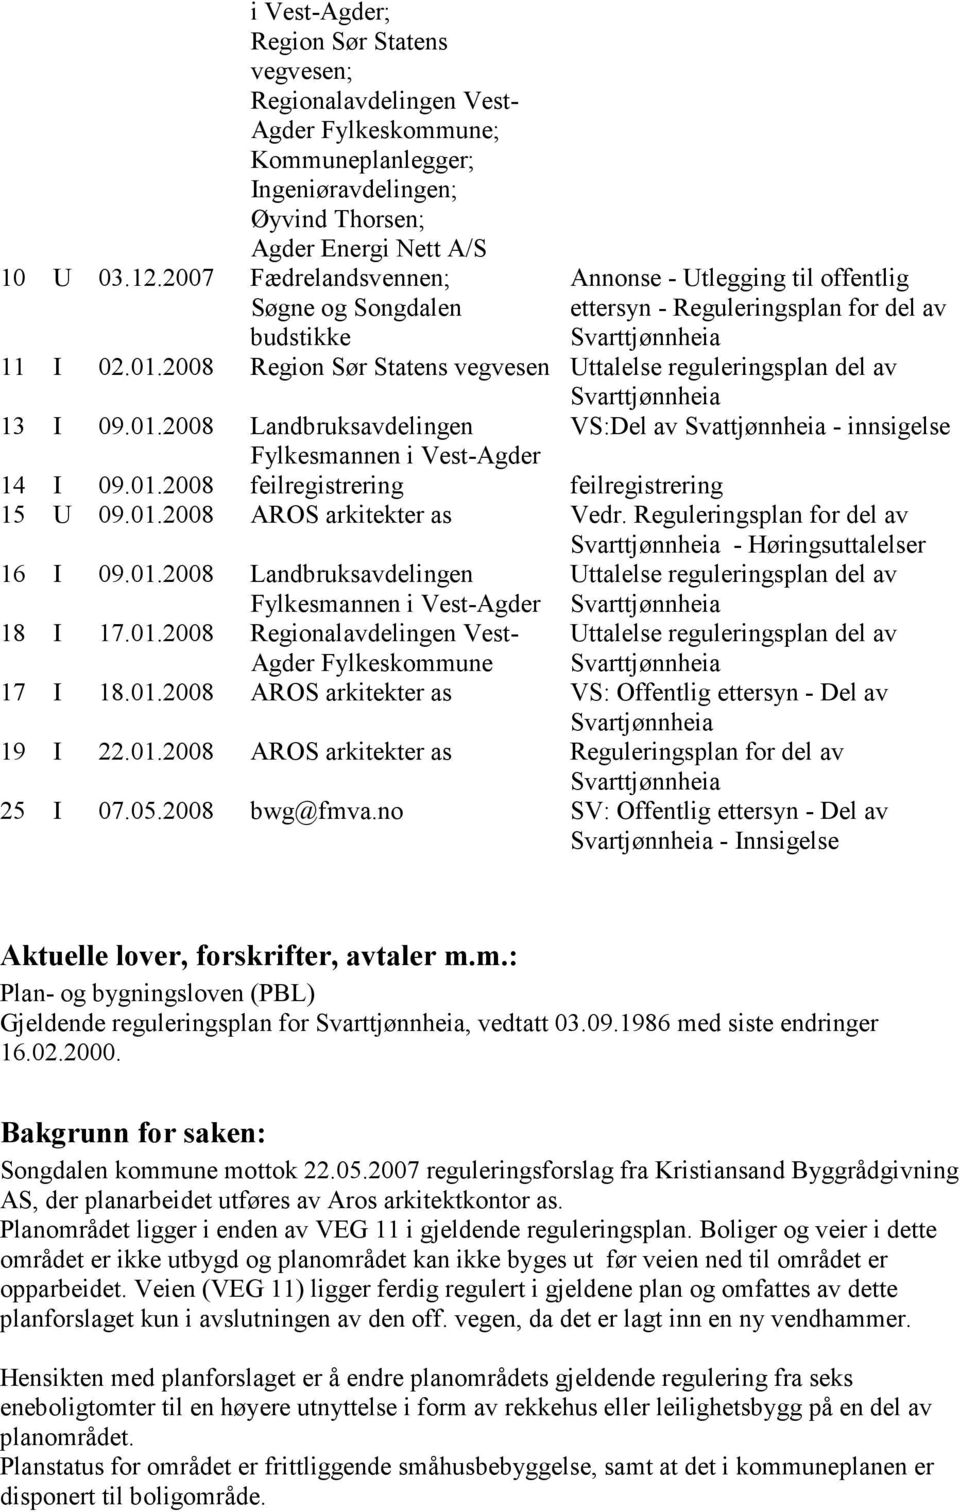 2008 Region Sør Statens vegvesen Uttalelse reguleringsplan del av 13 I 09.01.2008 Landbruksavdelingen VS:Del av Svattjønnheia - innsigelse Fylkesmannen i Vest-Agder 14 I 09.01.2008 feilregistrering feilregistrering 15 U 09.